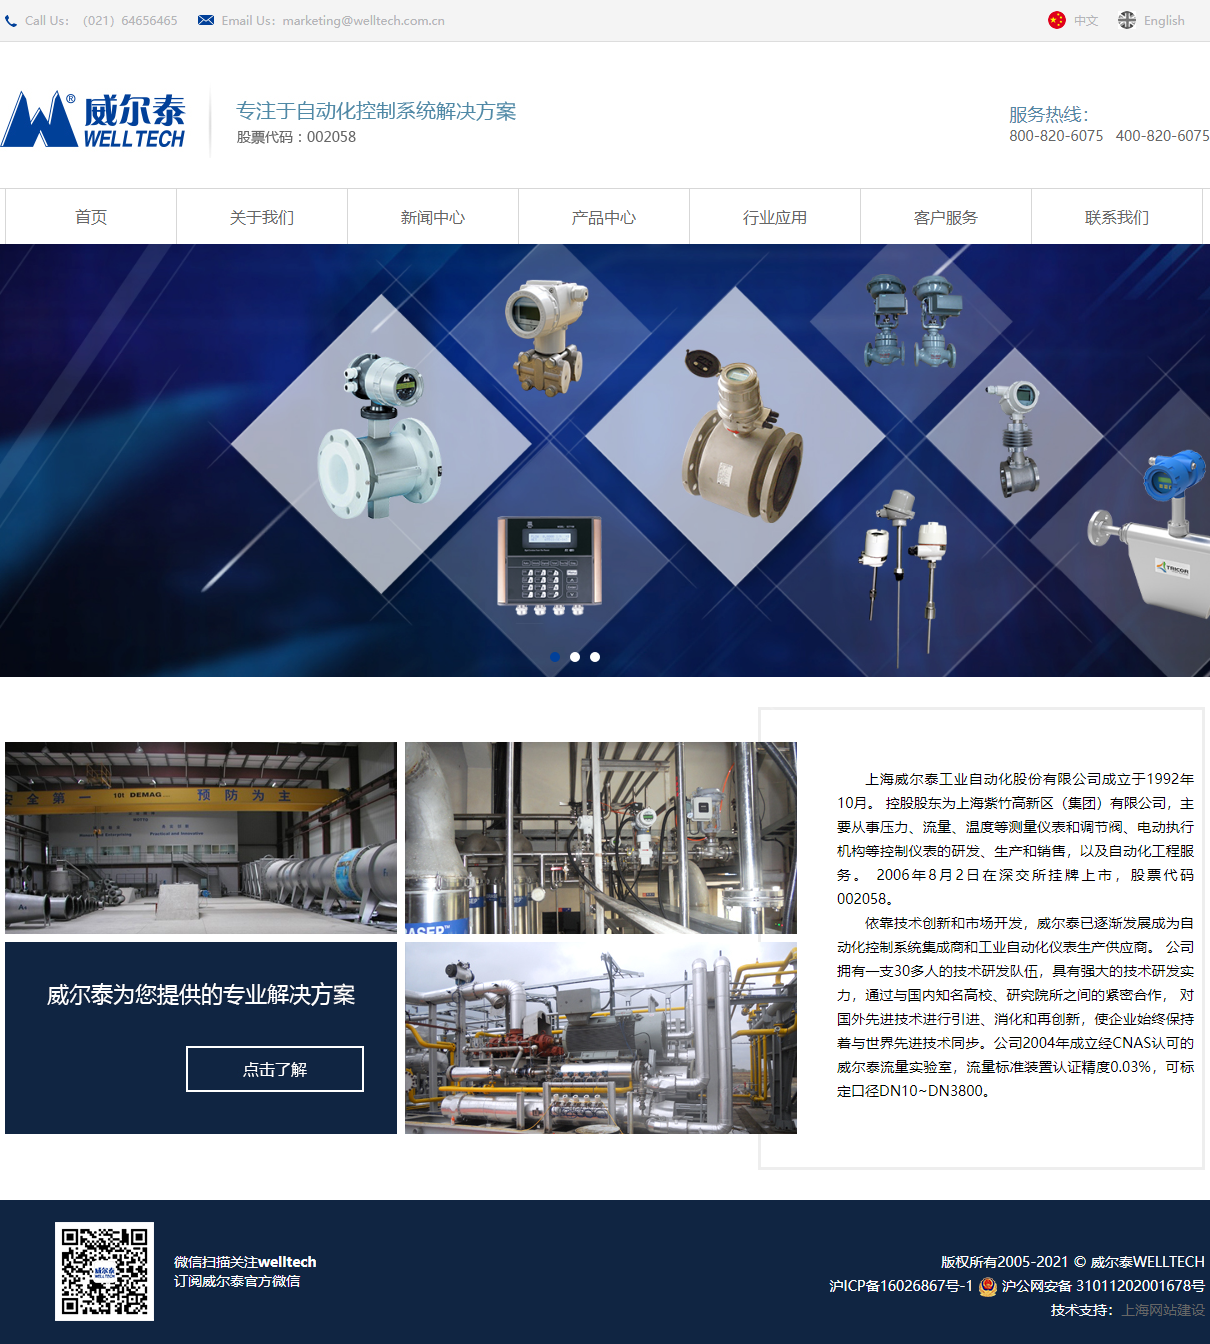 上海威尔泰工业自动化股份有限公司网站案例